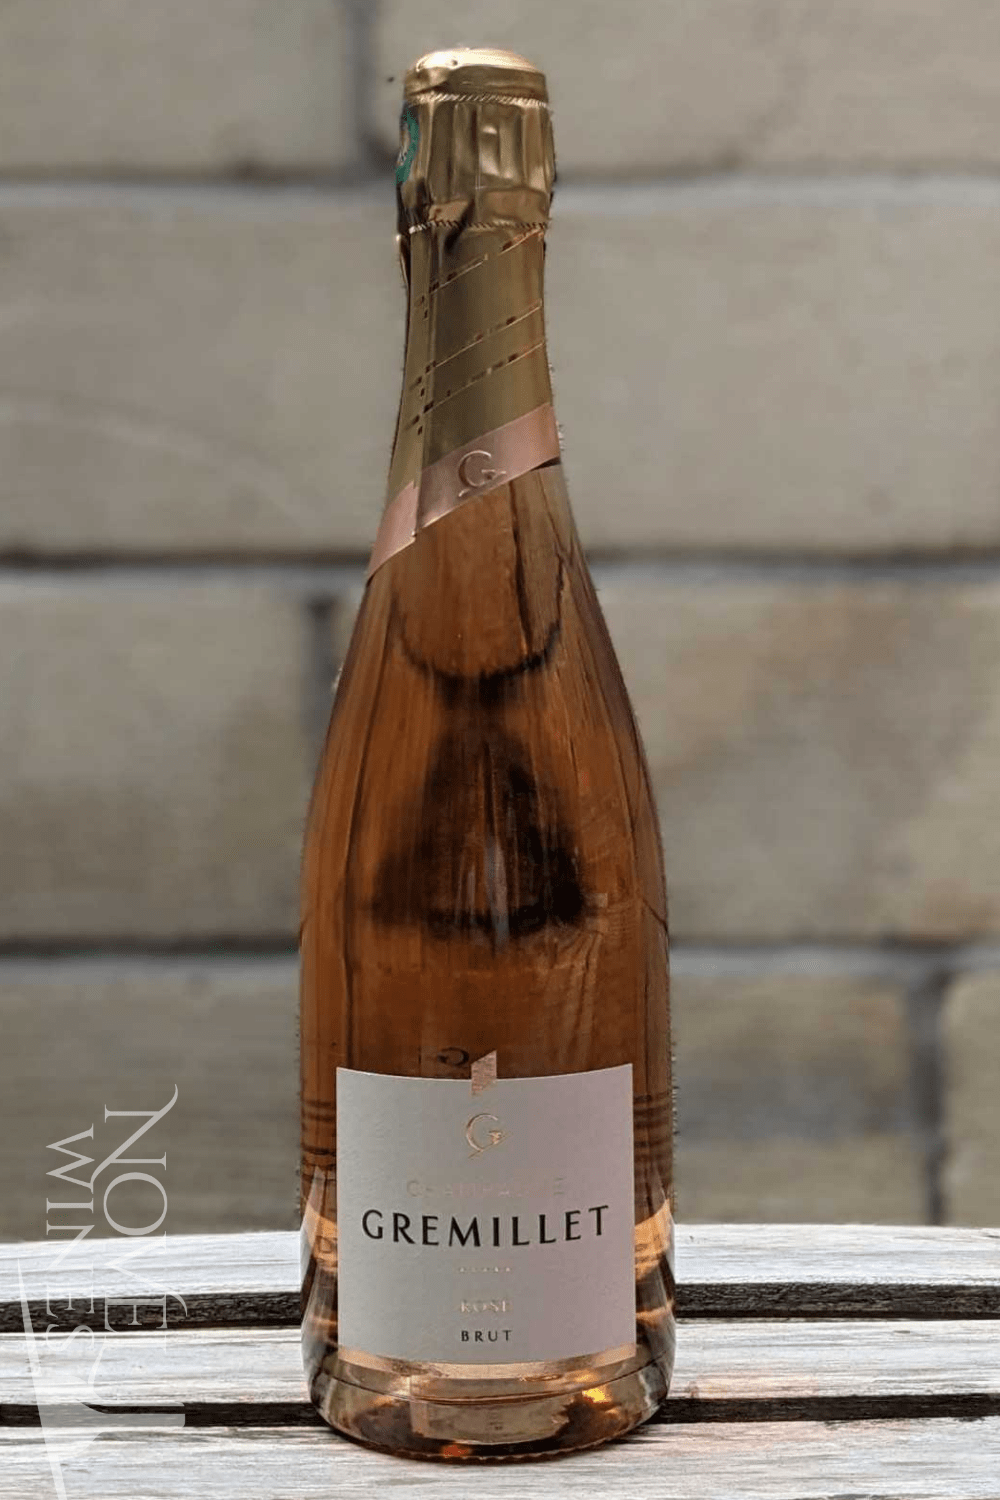 Novel Wines Sparkling Wine Champagne Gremillet Rose Brut NV, France